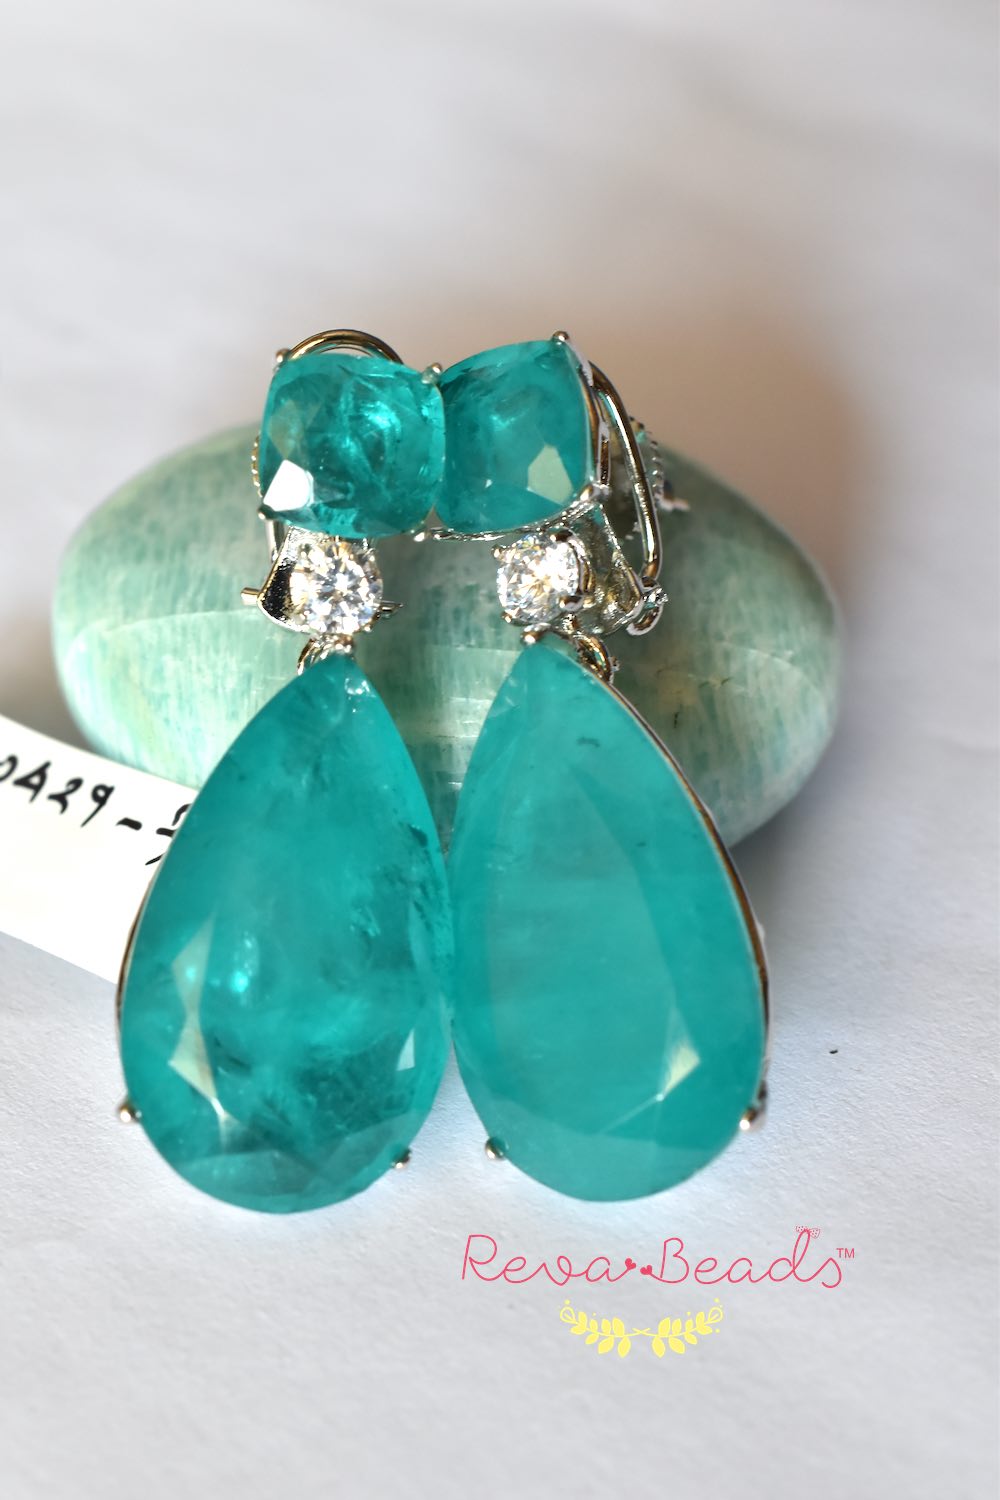 emerald green doublet earrings